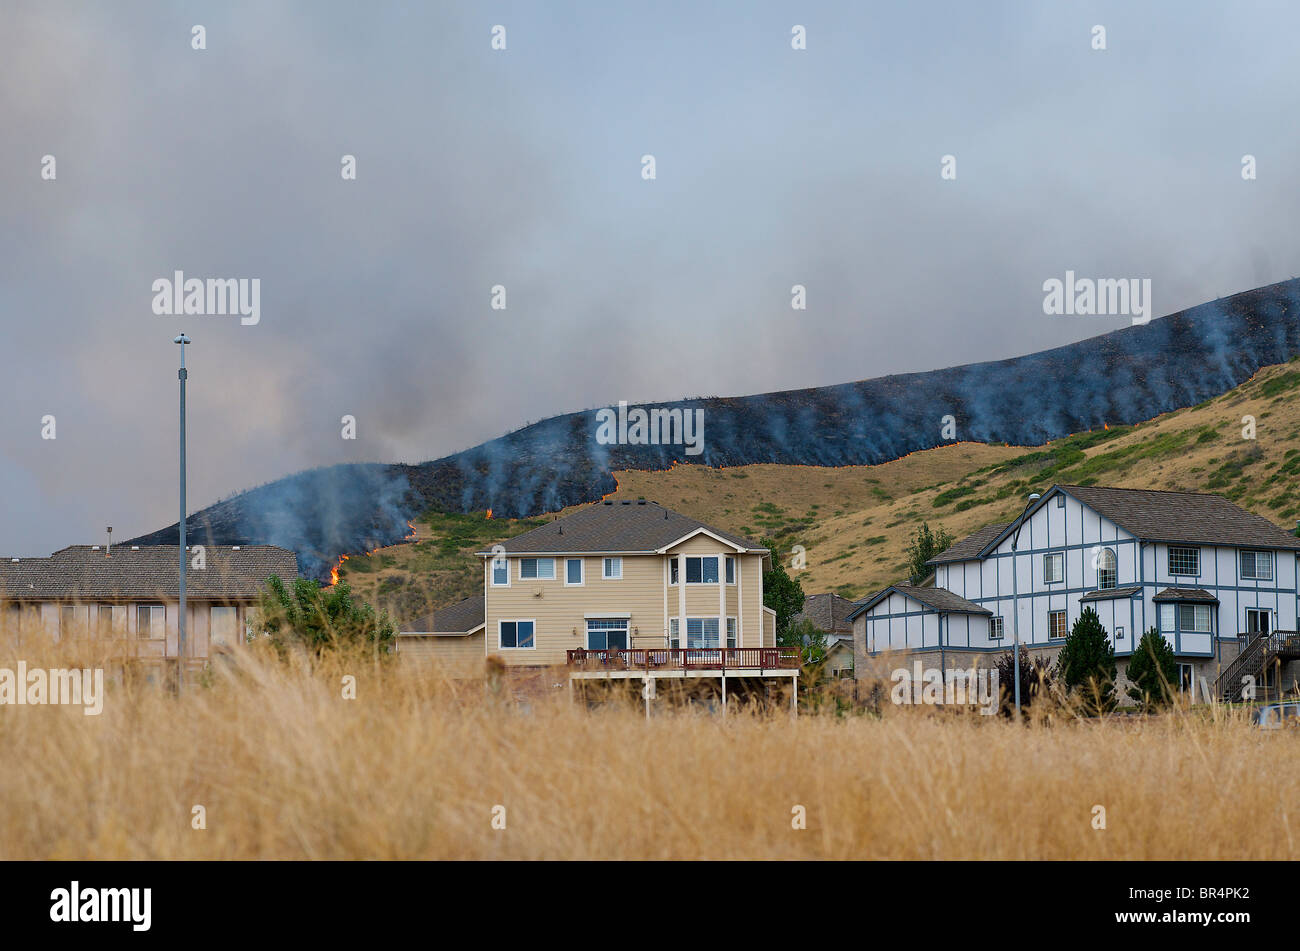 a grass fire near homes. Stock Photo